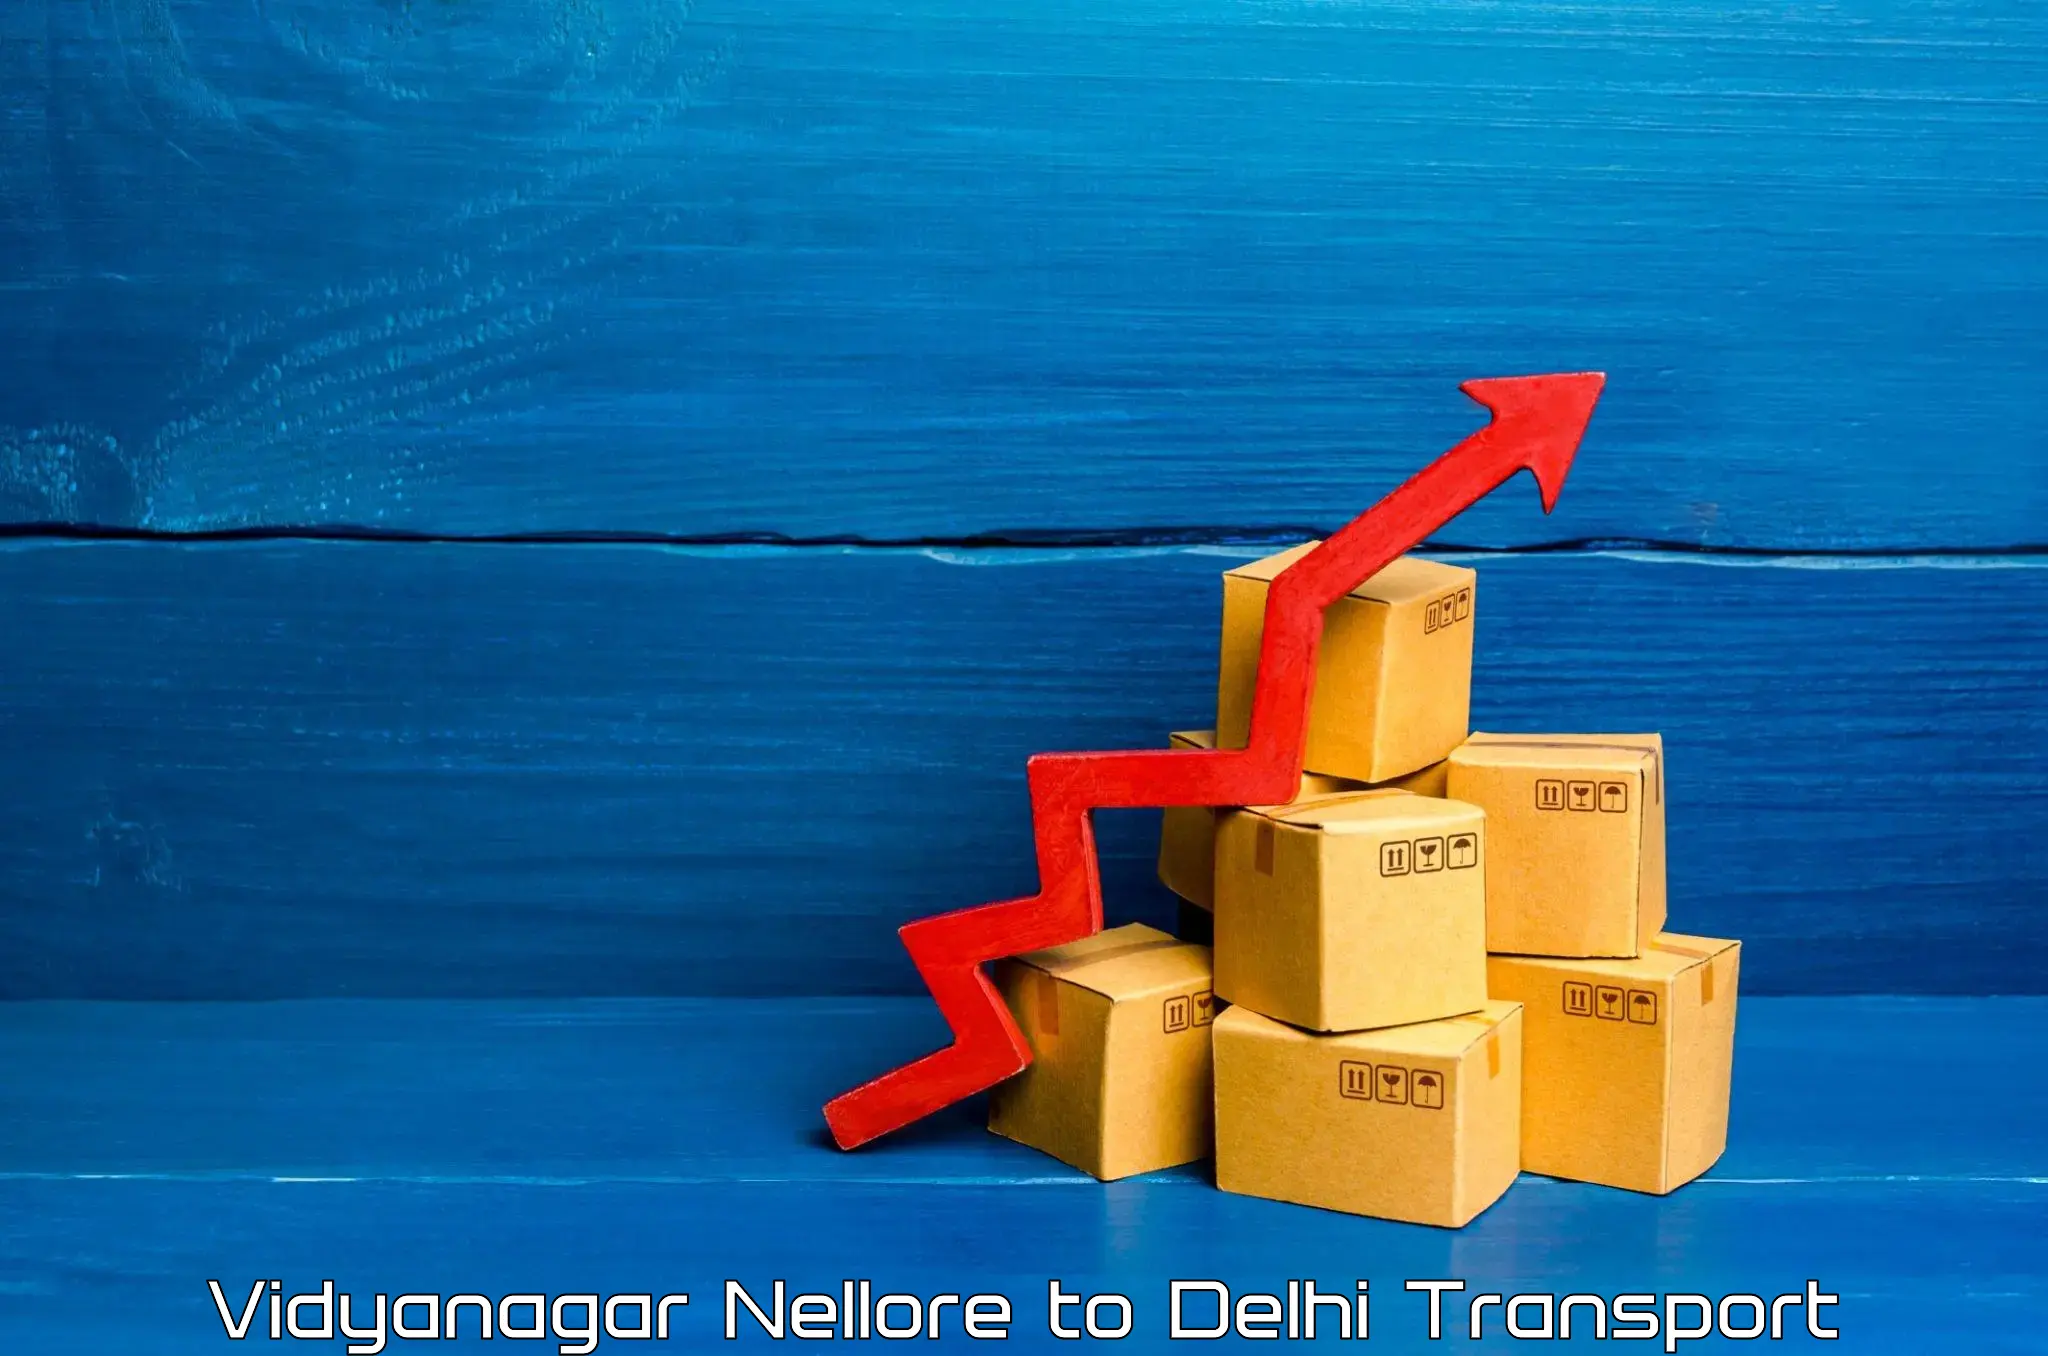 Cargo transportation services Vidyanagar Nellore to Burari